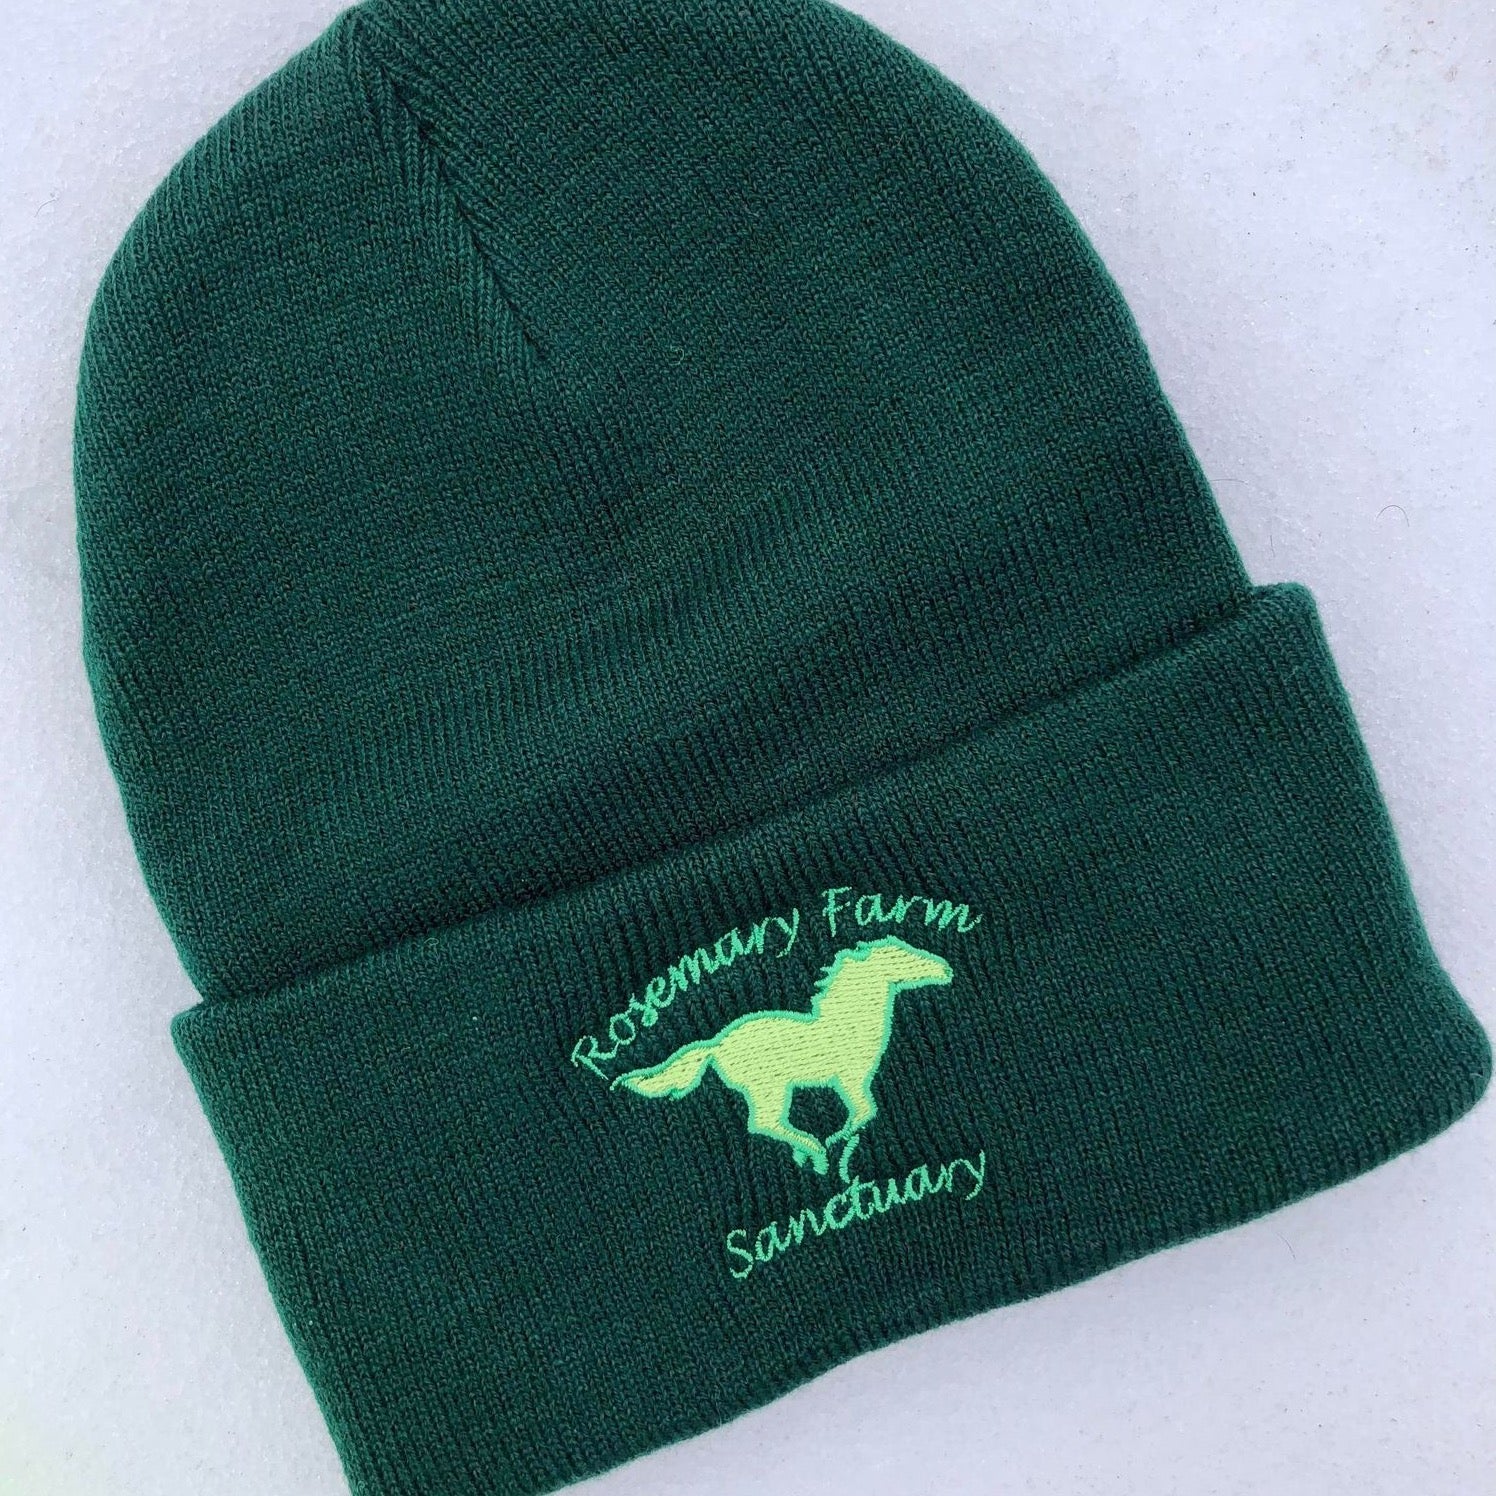 Rosemary Farm Logo Knit Caps